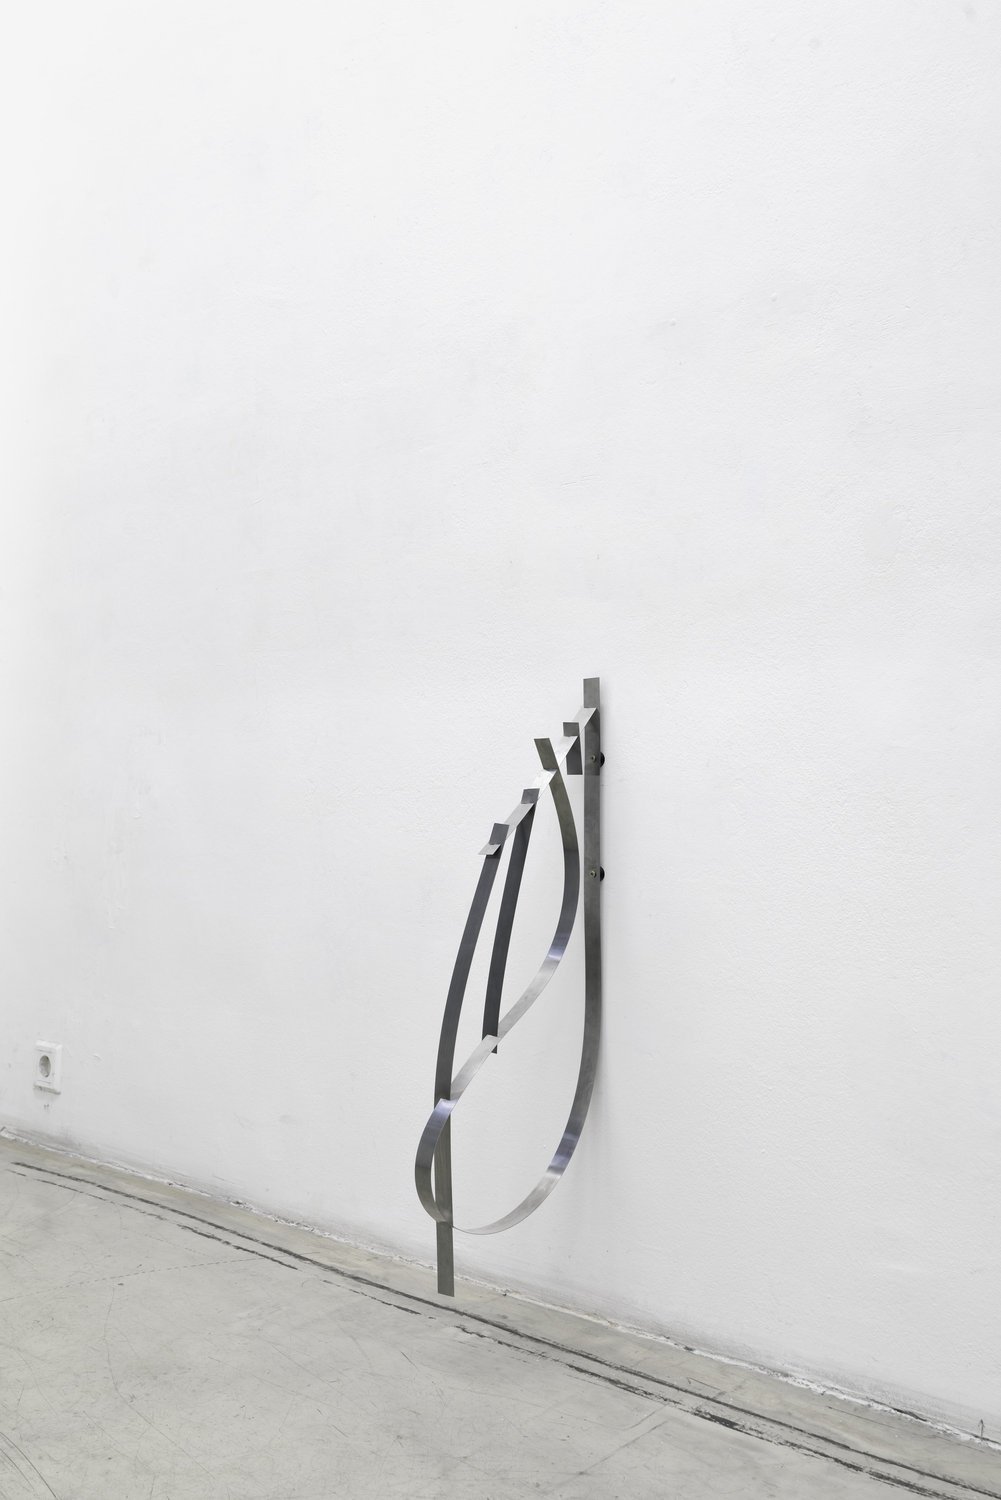 Benjamin Hirtecocc, 2016Spring steel, rubber, screws50 x 40 x 2.5 cmLieber Rücken / Gentle spine, Kunstbüro, Vienna, 2016